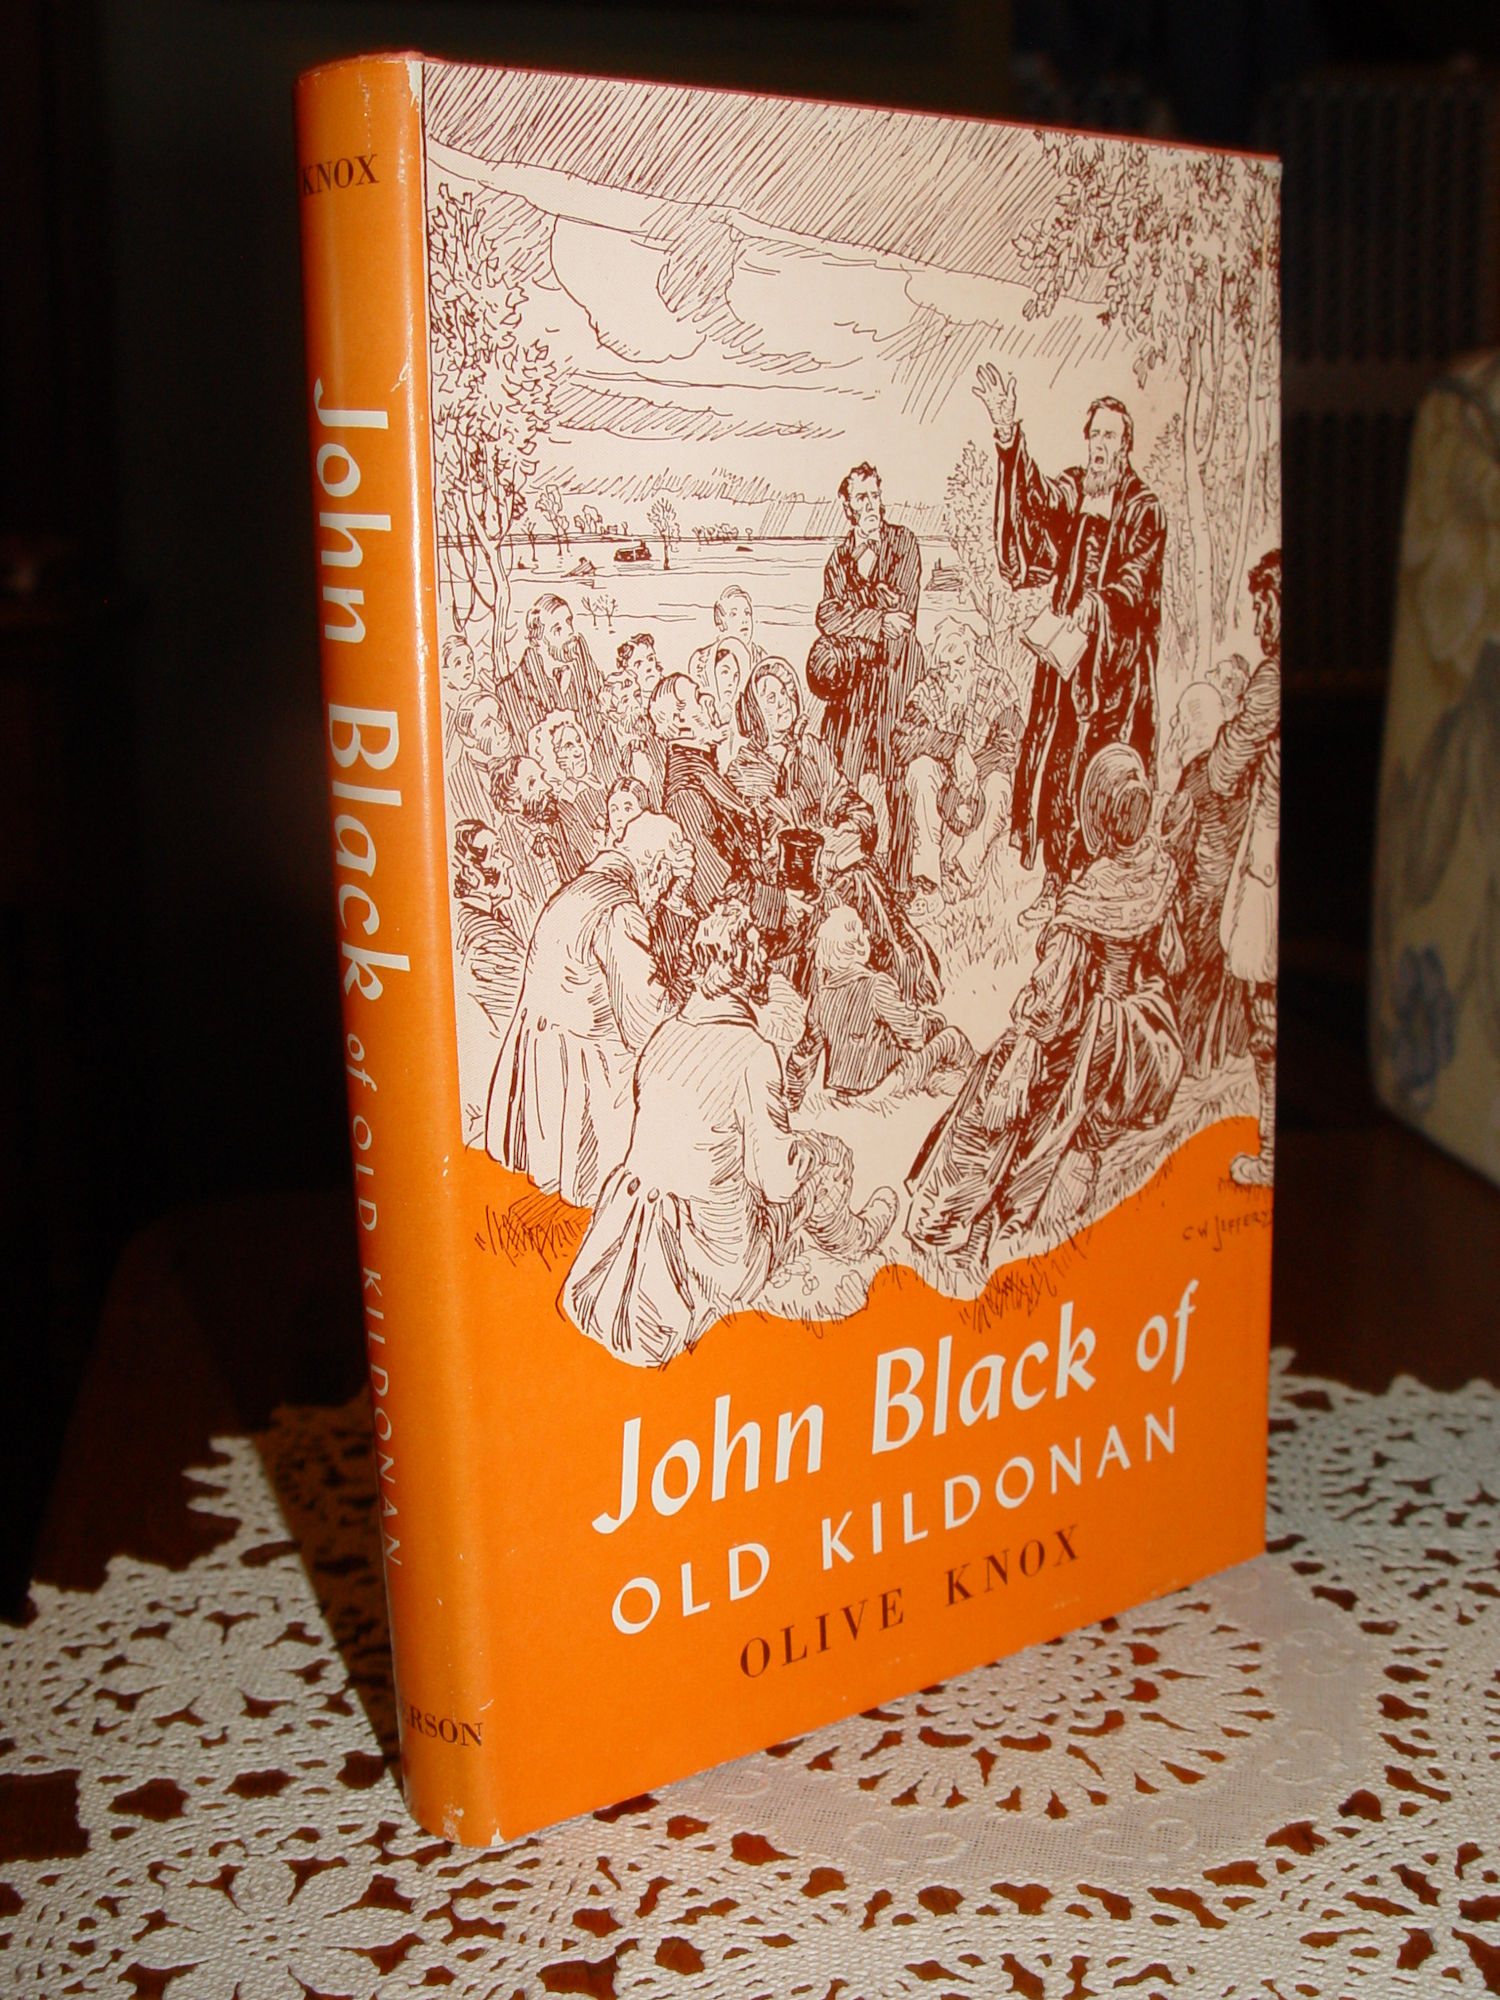 John Black of Old Kildonan 1958 by Olive
                        Knox